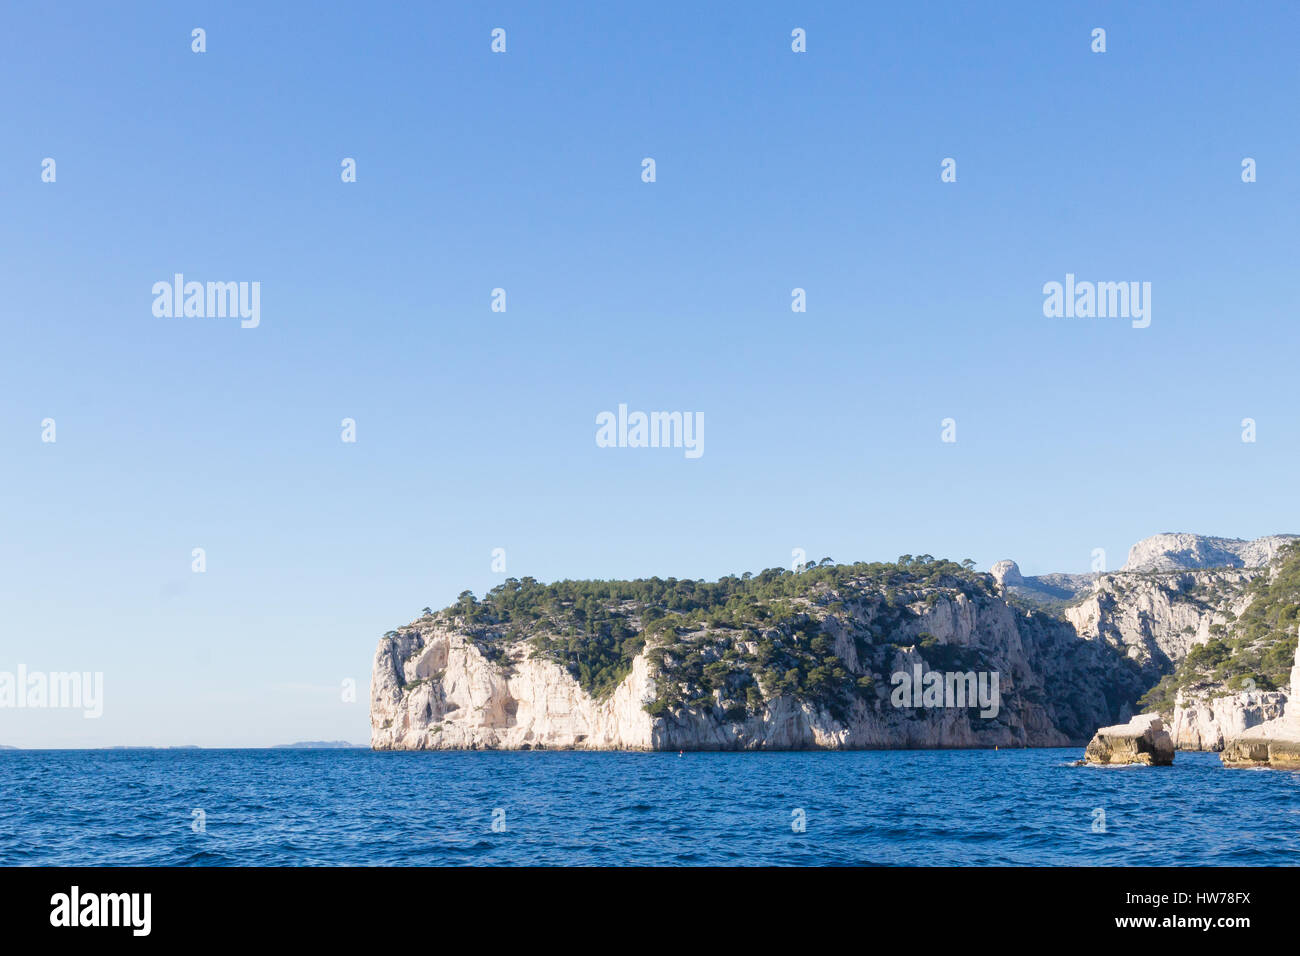 La belle nature des Calanques sur la côte d'Azur France. Parc National des Calanques près de Marseille. Nature et plein air Banque D'Images